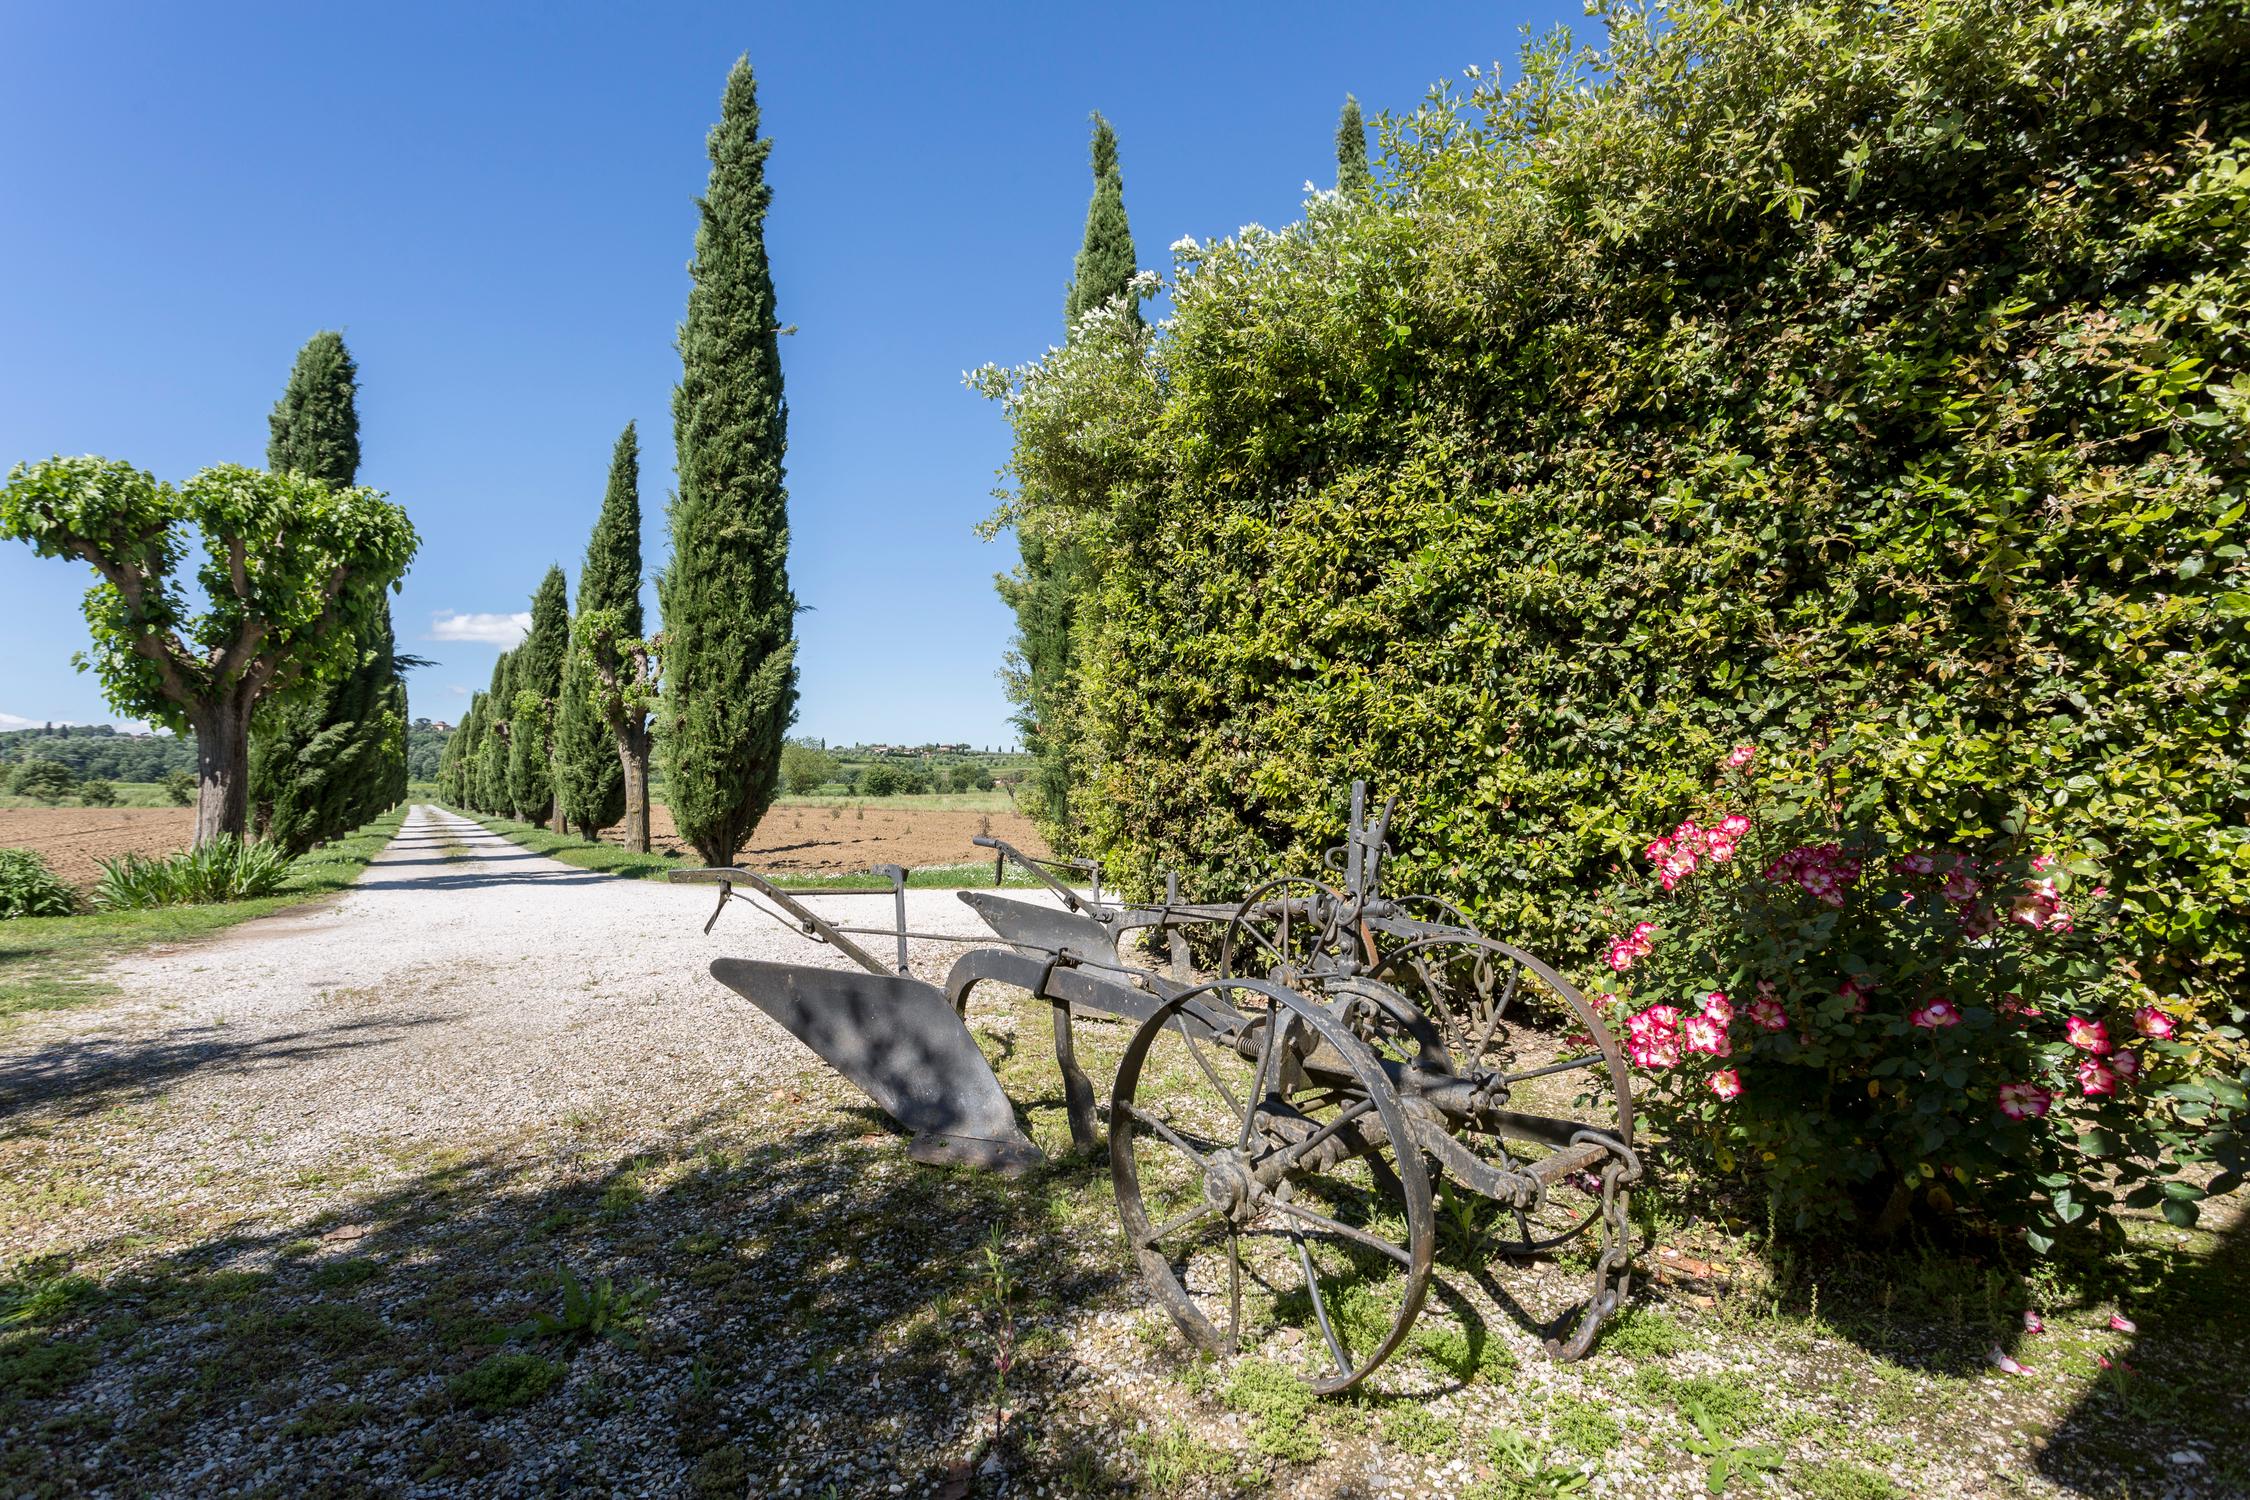 Casa Carlotta, the country house of Lodovichi farm in Tuscany